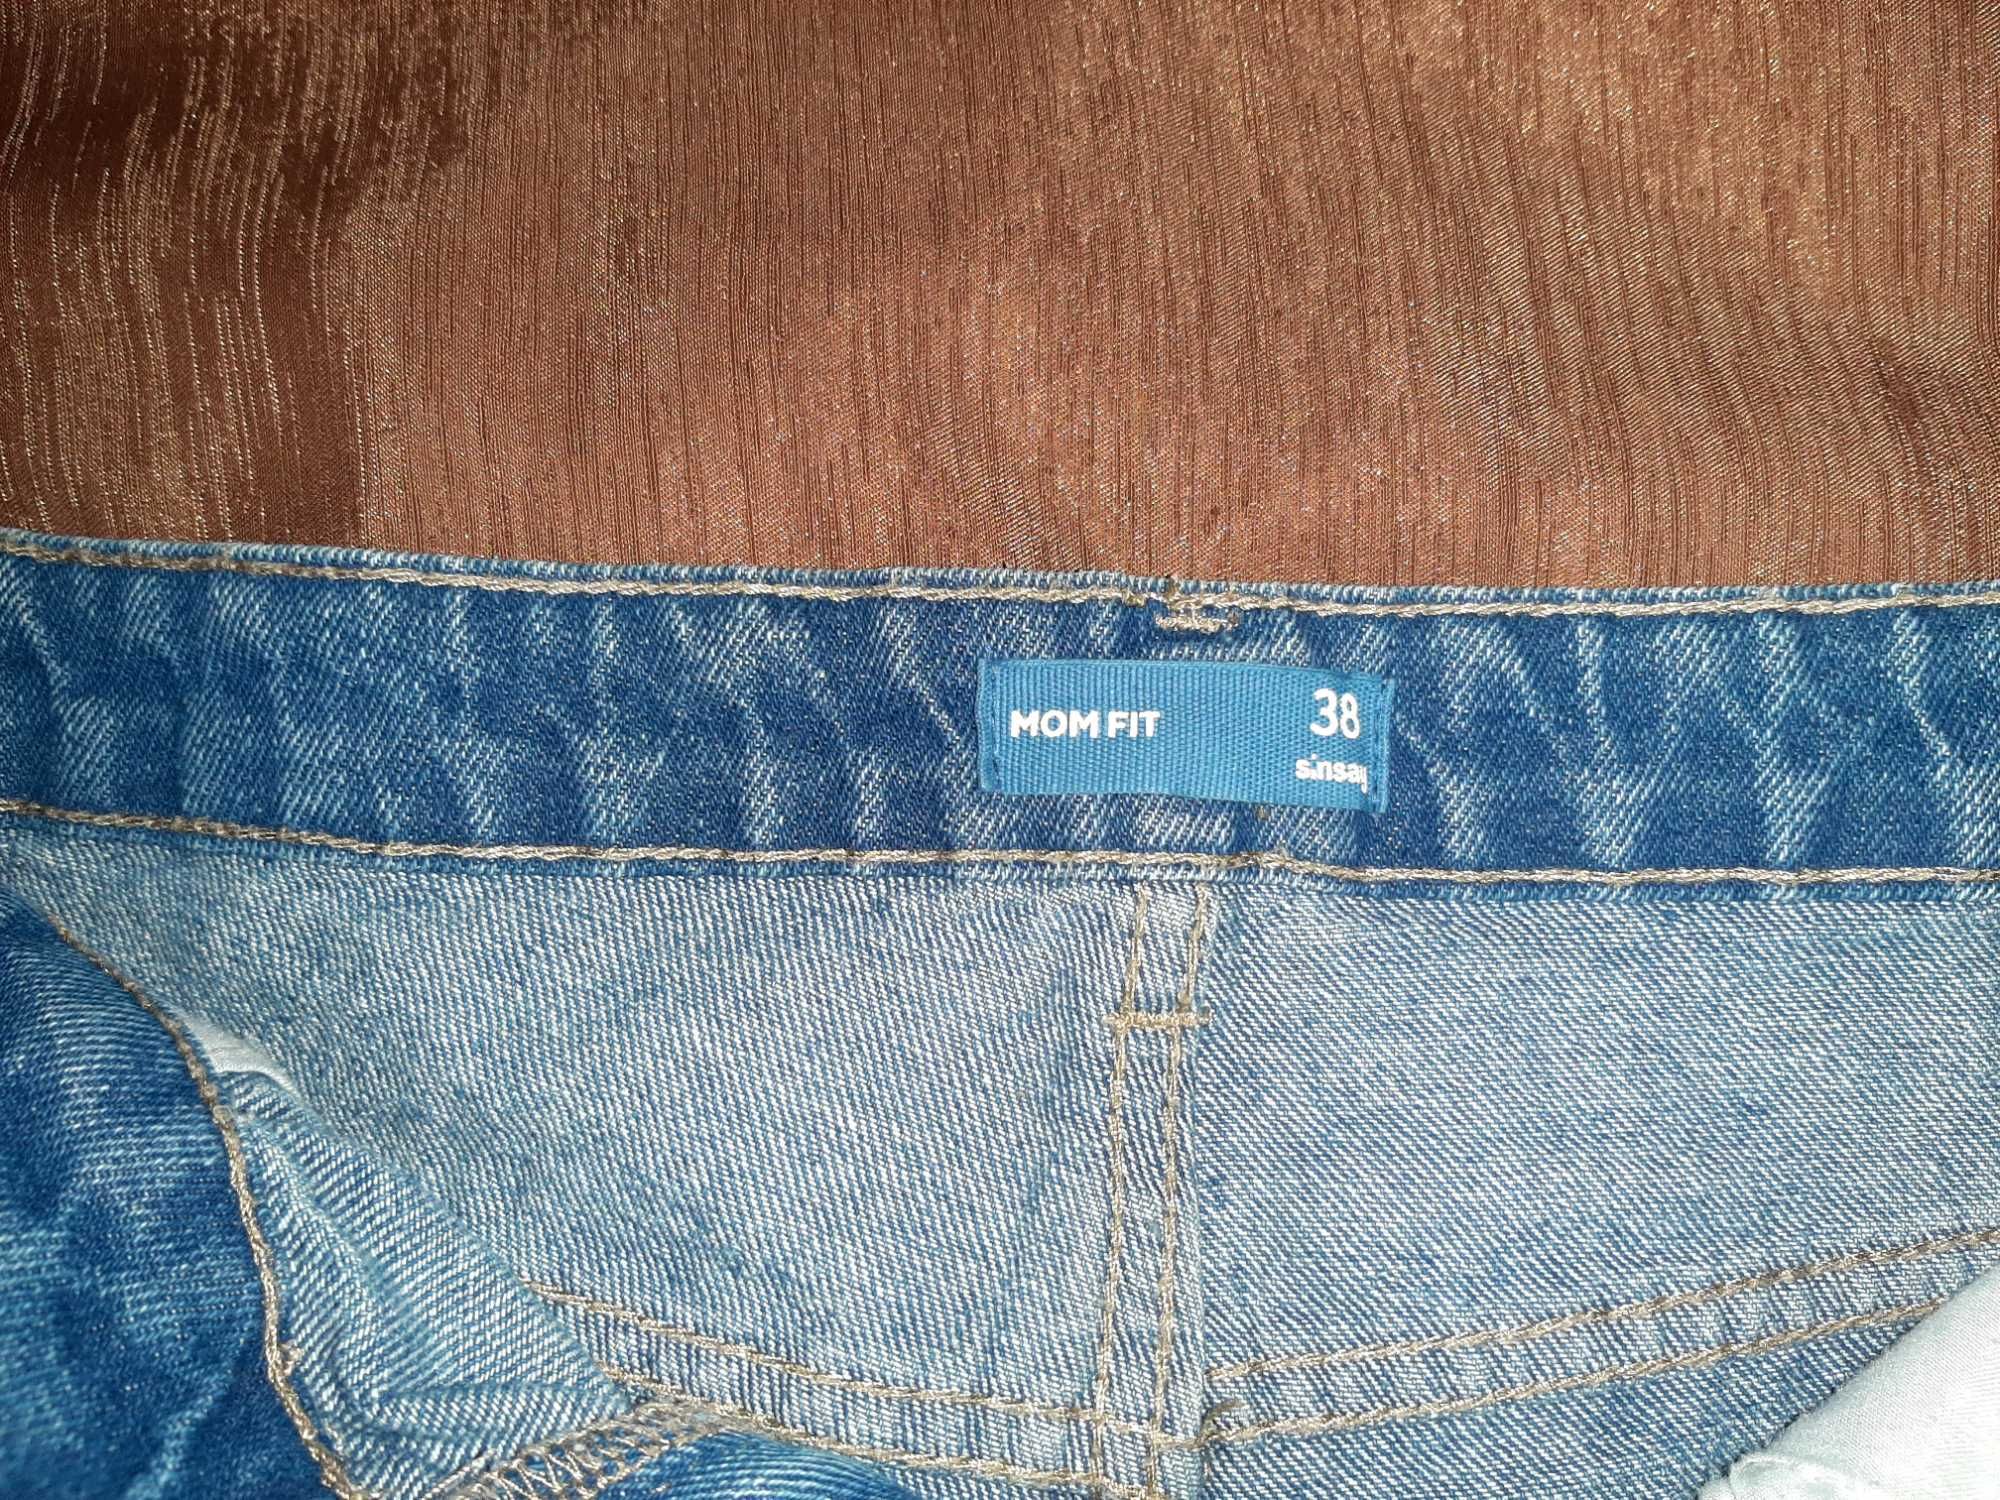 Krótkie spodenki/szorty jeans Sinsay rozmiar 38 Mom fit